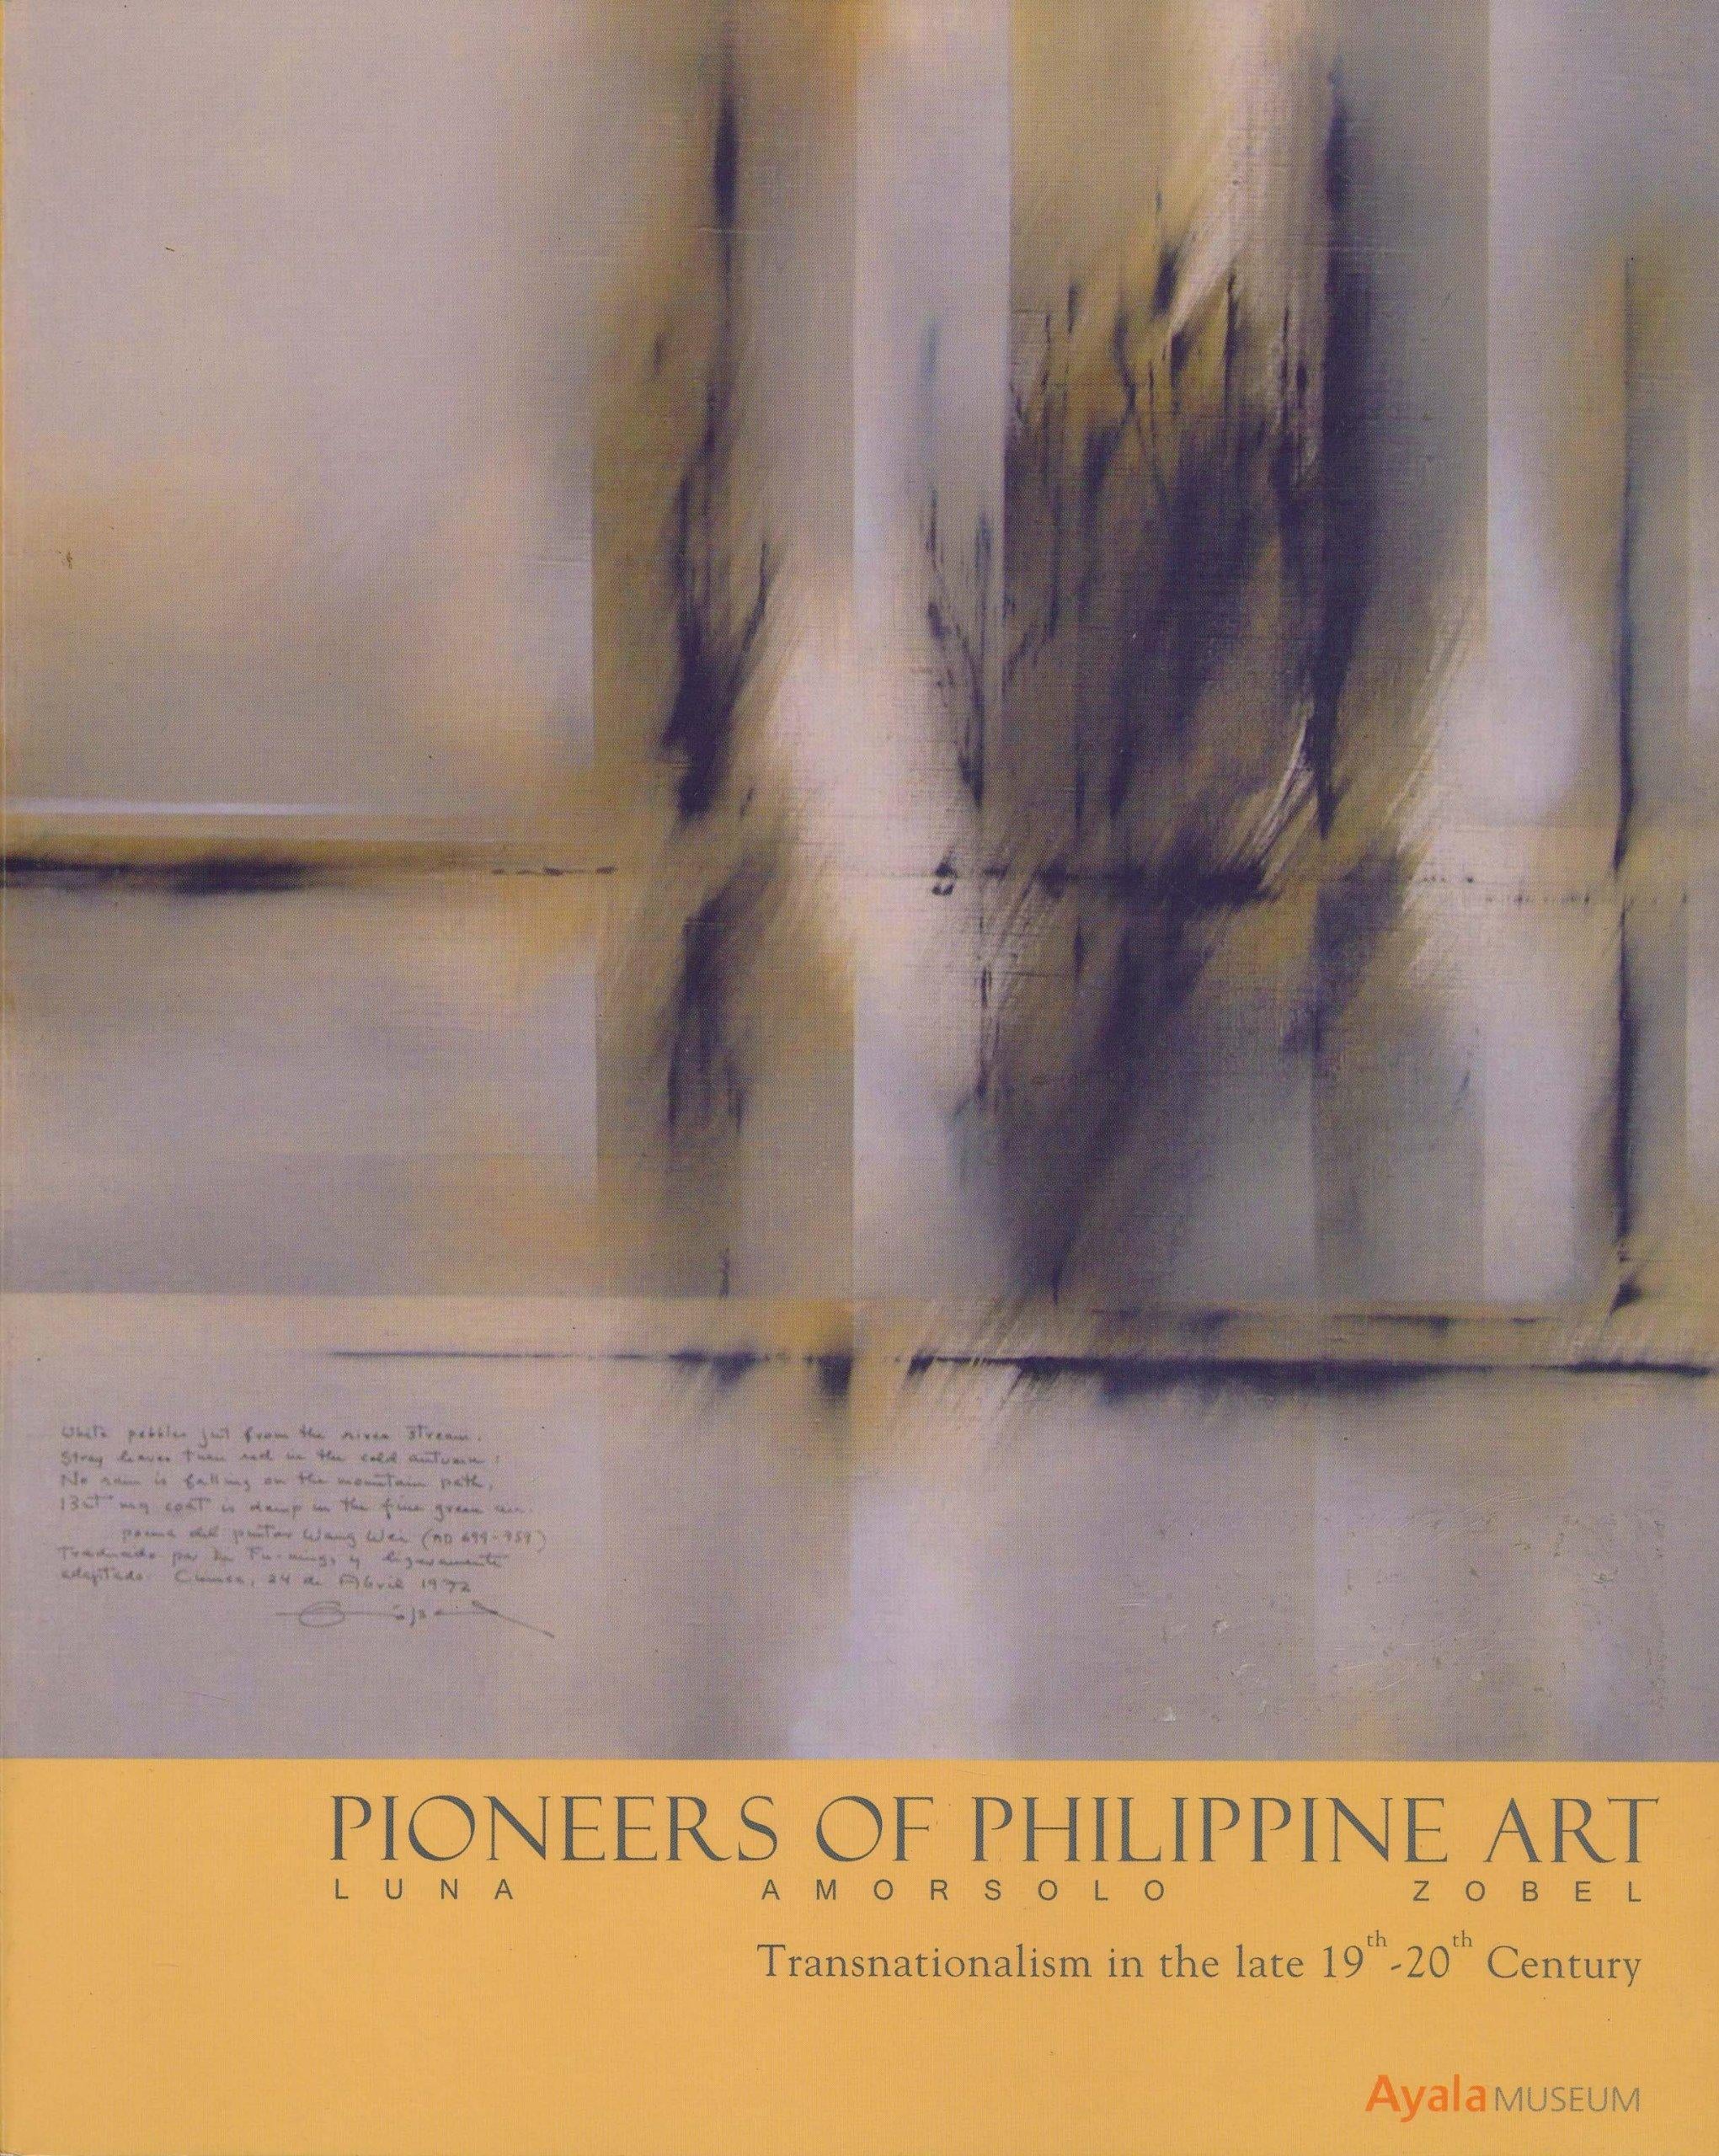 Pioneers of Philippine Art: Luna, Amorsolo, Zobel - Painting by Fernando Amorsolo y Cueto